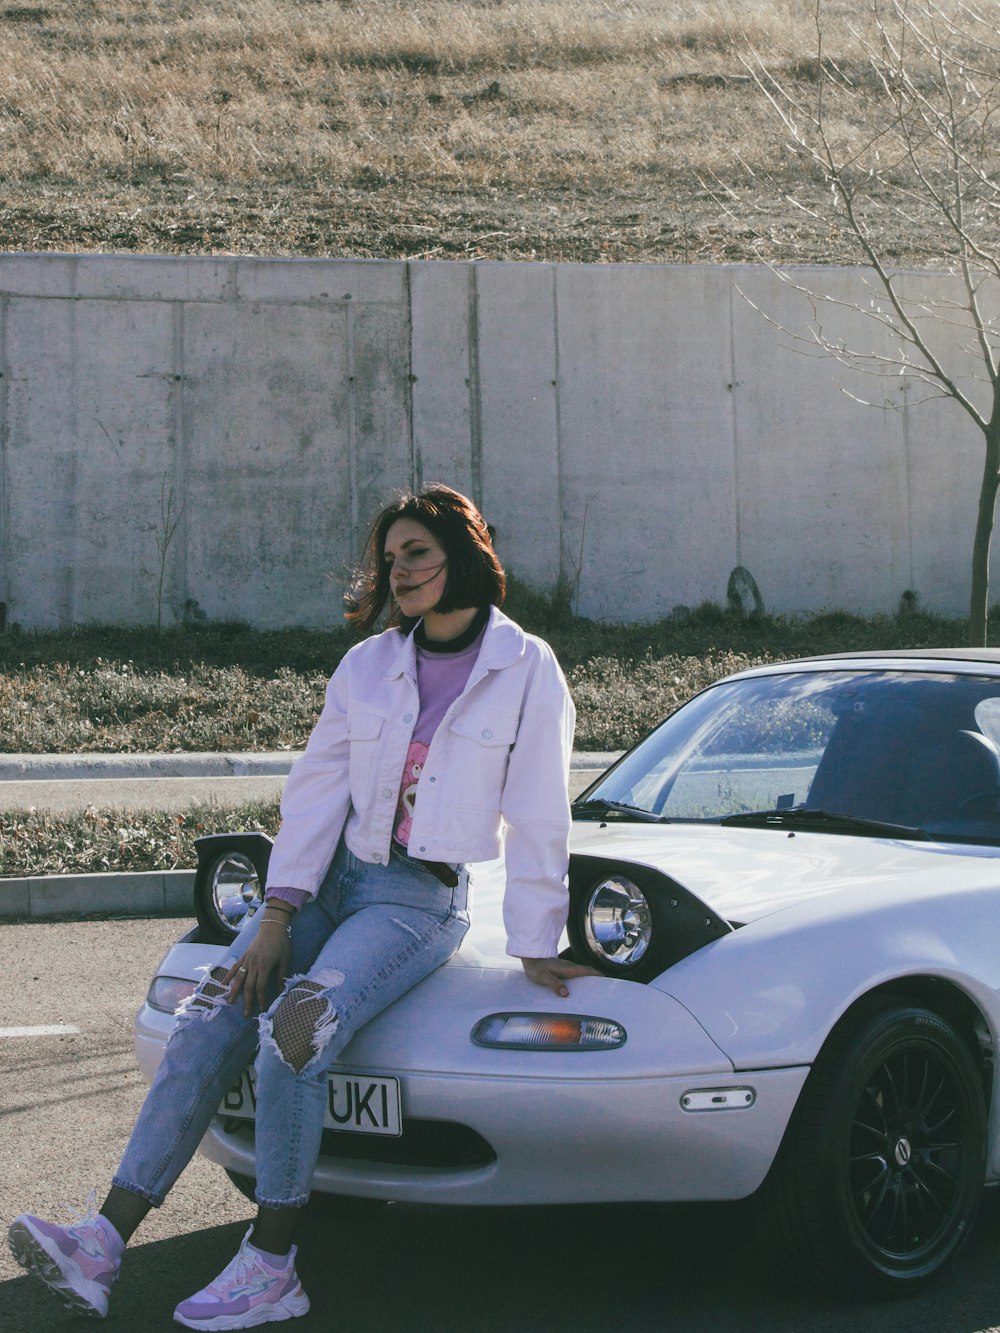 a woman sitting on a car